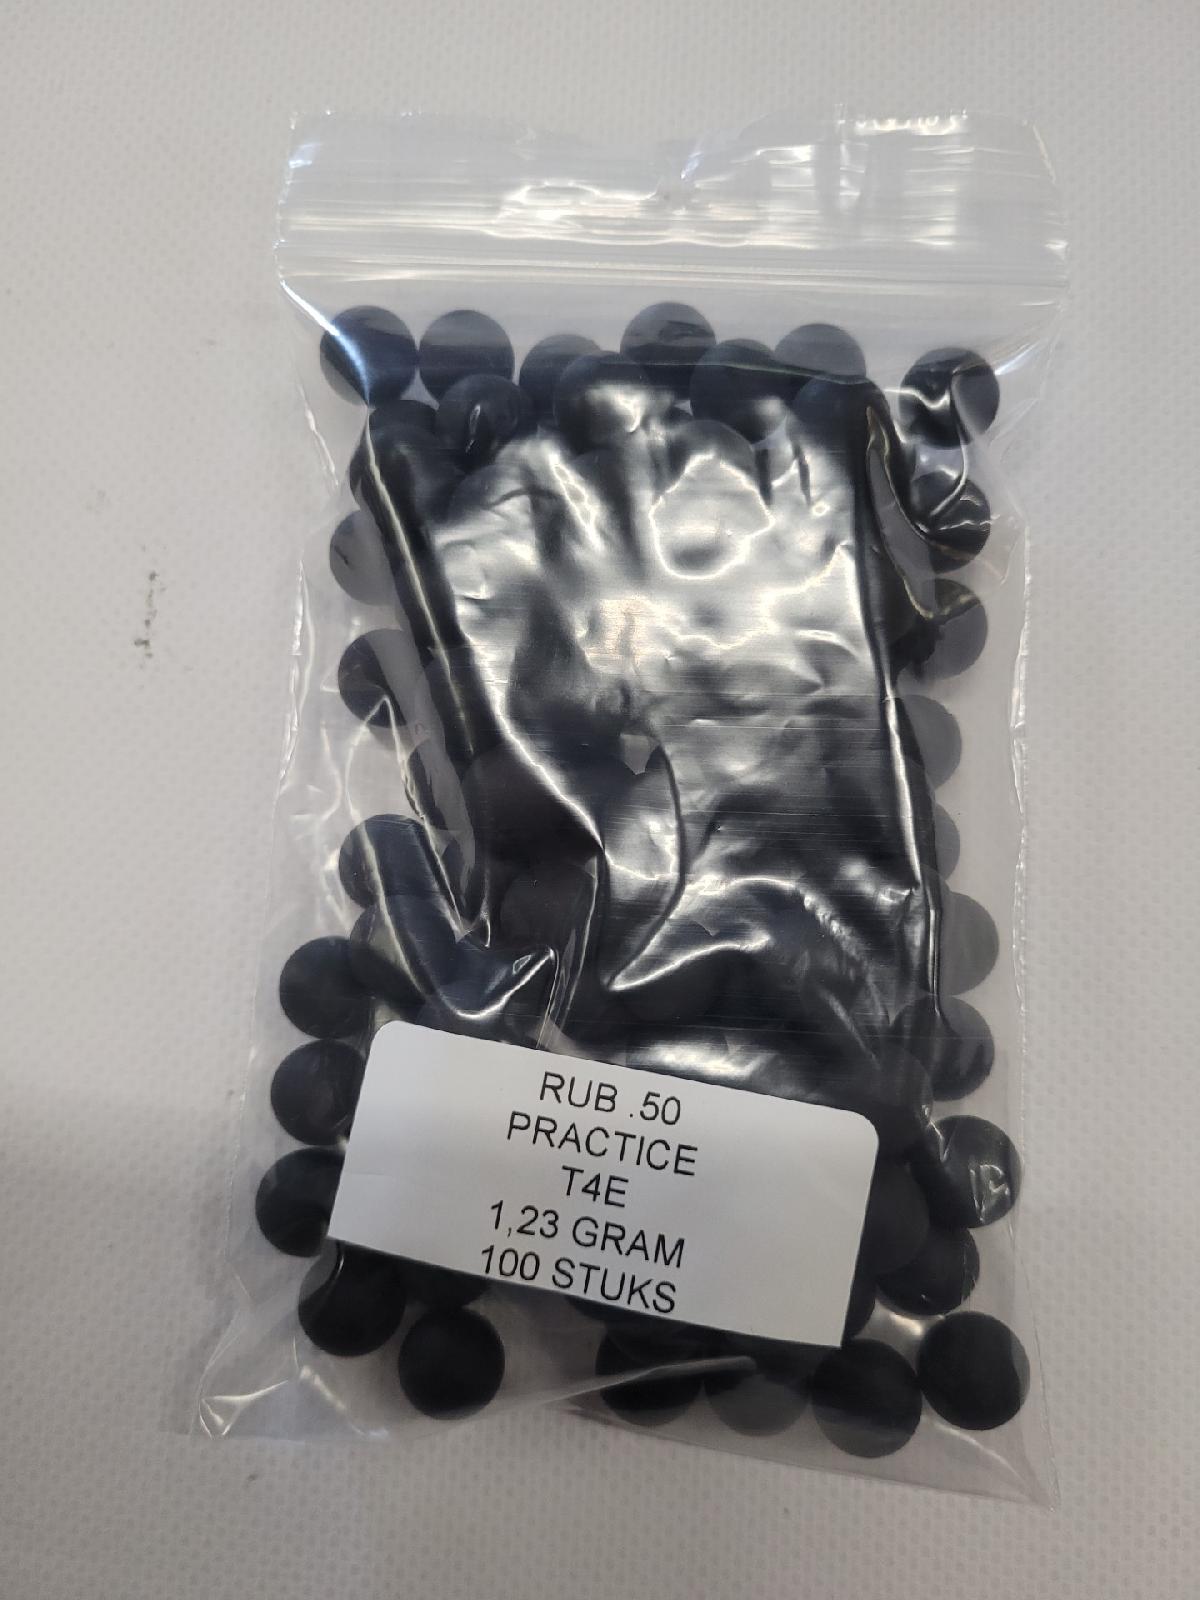 T4E RubberBalls Black Practice  TRAINING / 100 stuks / 1,23 gram / voor Umarex .50 Co2 TP50 pistool-3225-a